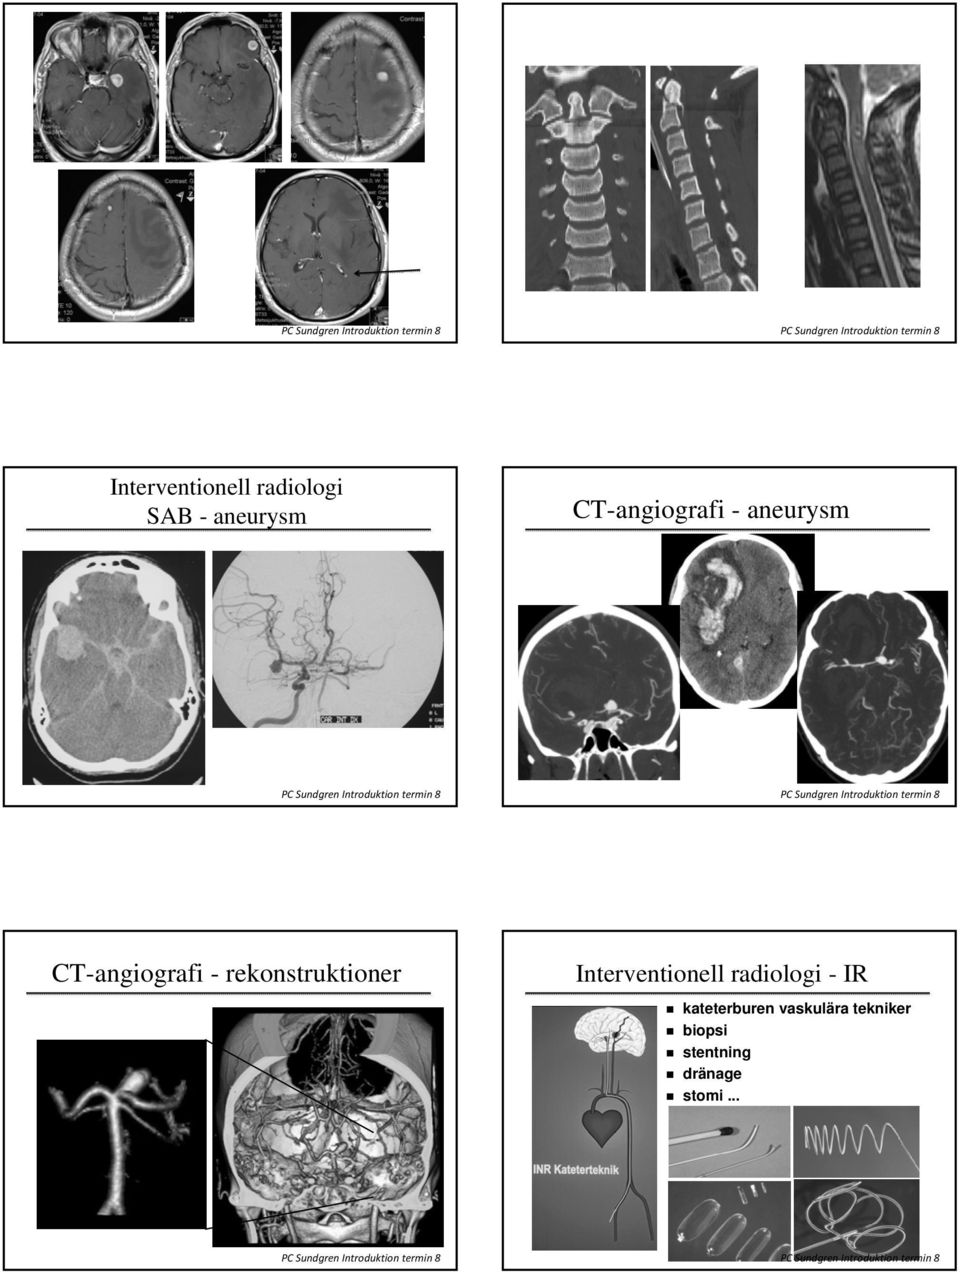 rekonstruktioner Interventionell radiologi - IR